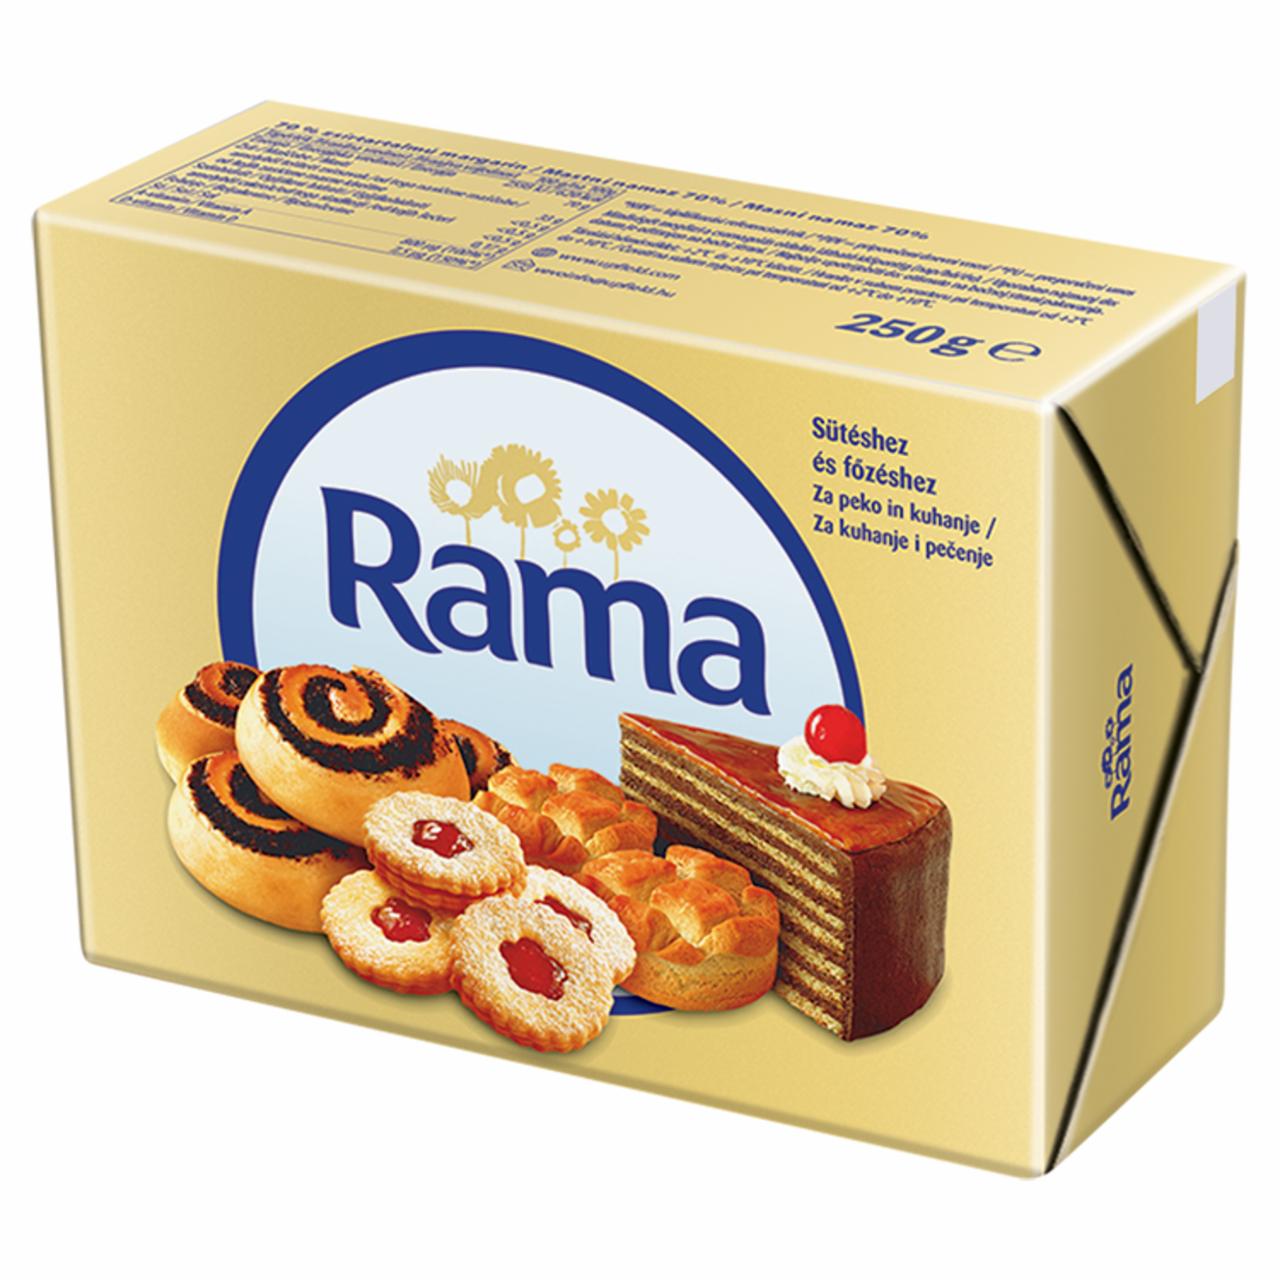 Képek - Rama margarin sütéshez és főzéshez 250 g